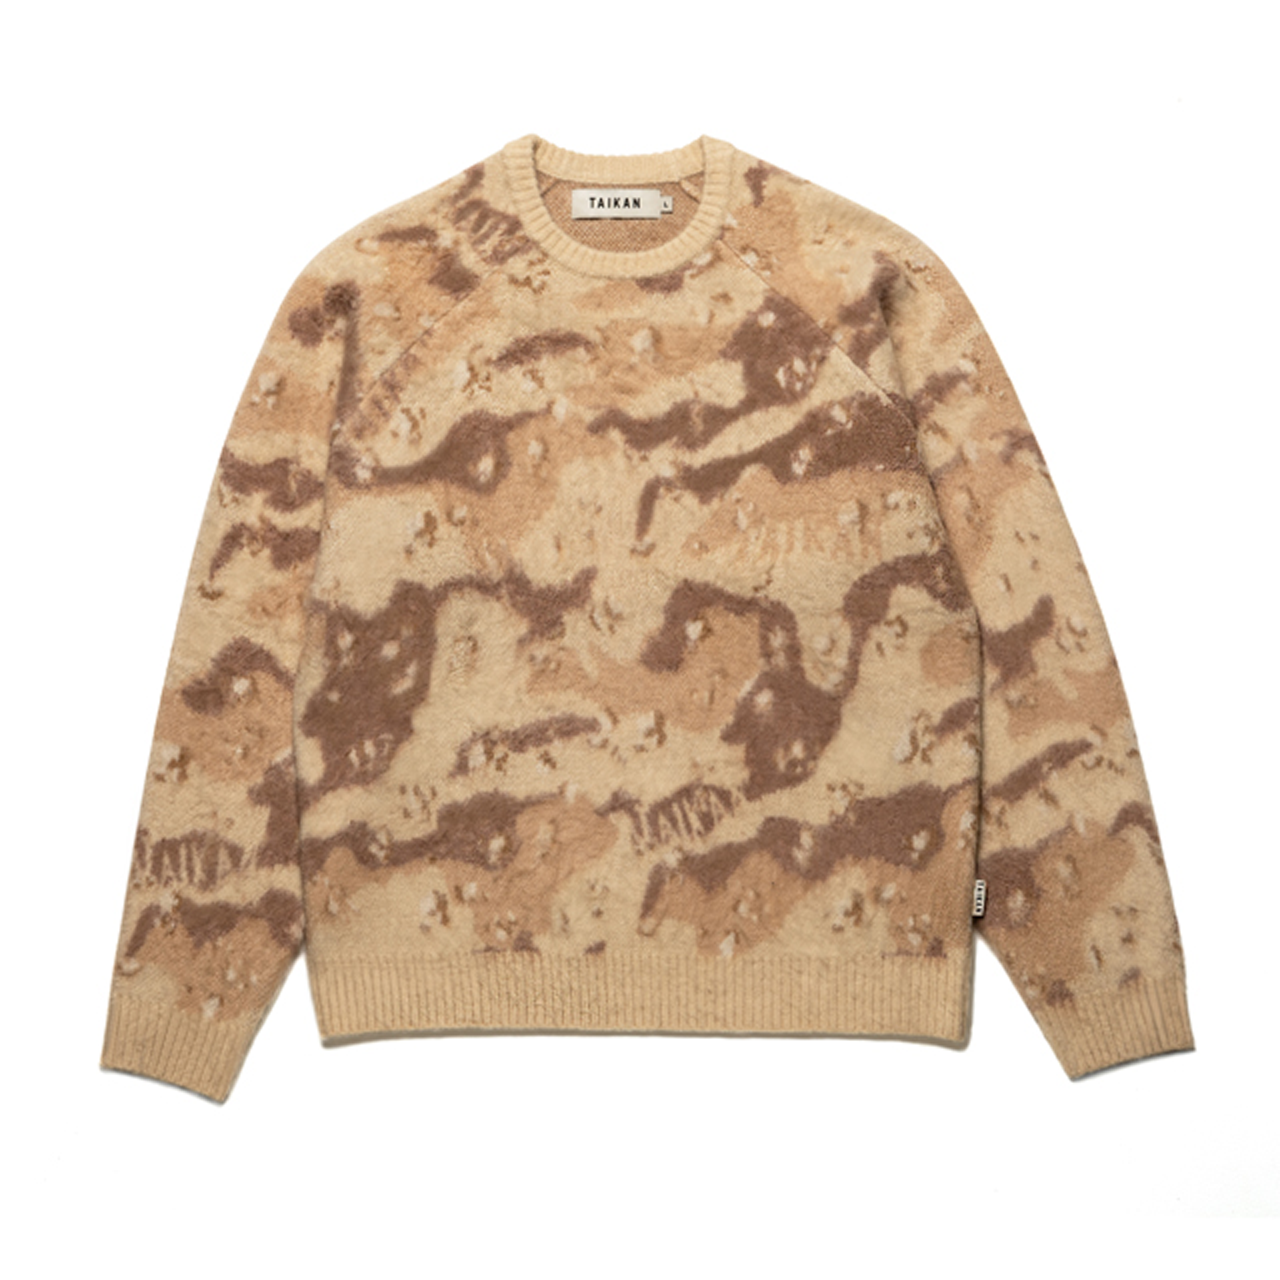 Taikan Custom Sweater